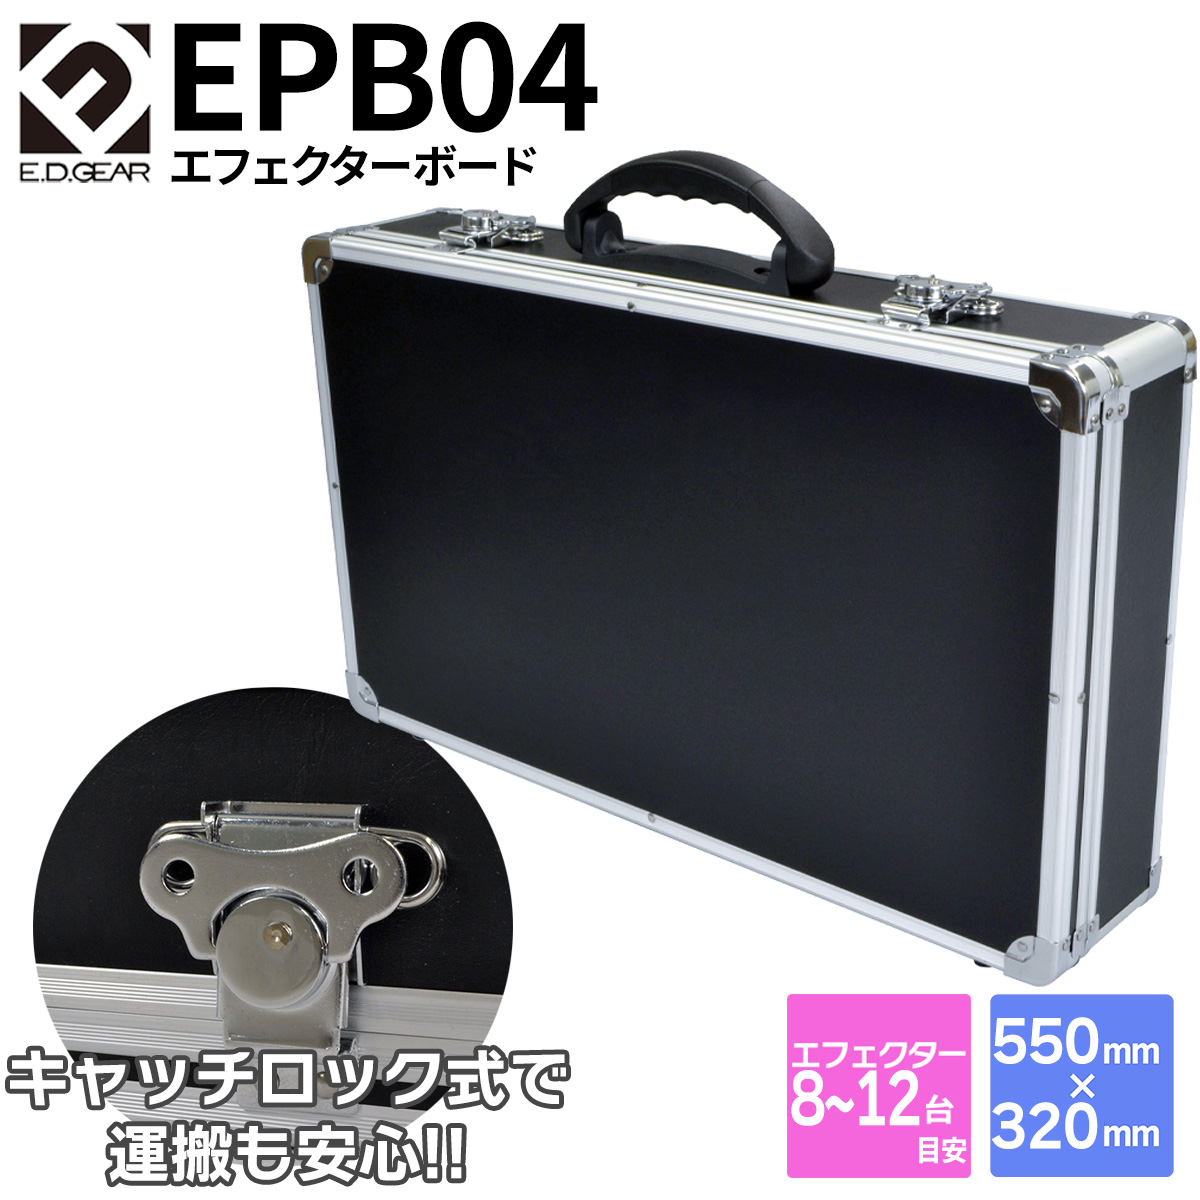 E.D.GEAR EPB04 エフェクターケース 550×320×100mm イーディーギア EDGEAR 【 ららぽーと横浜店 】